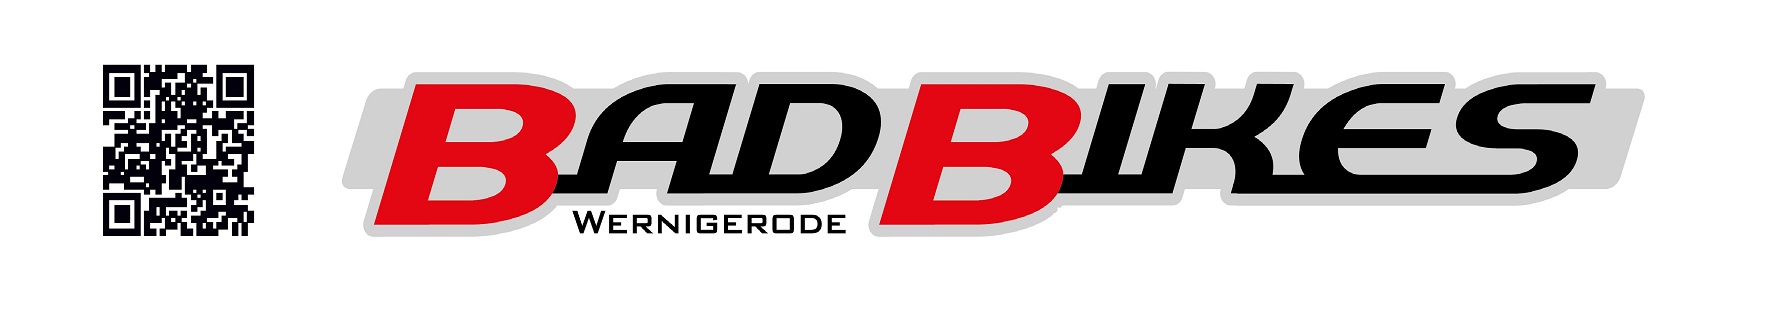 Bild 1 BADBIKES GmbH in Wernigerode